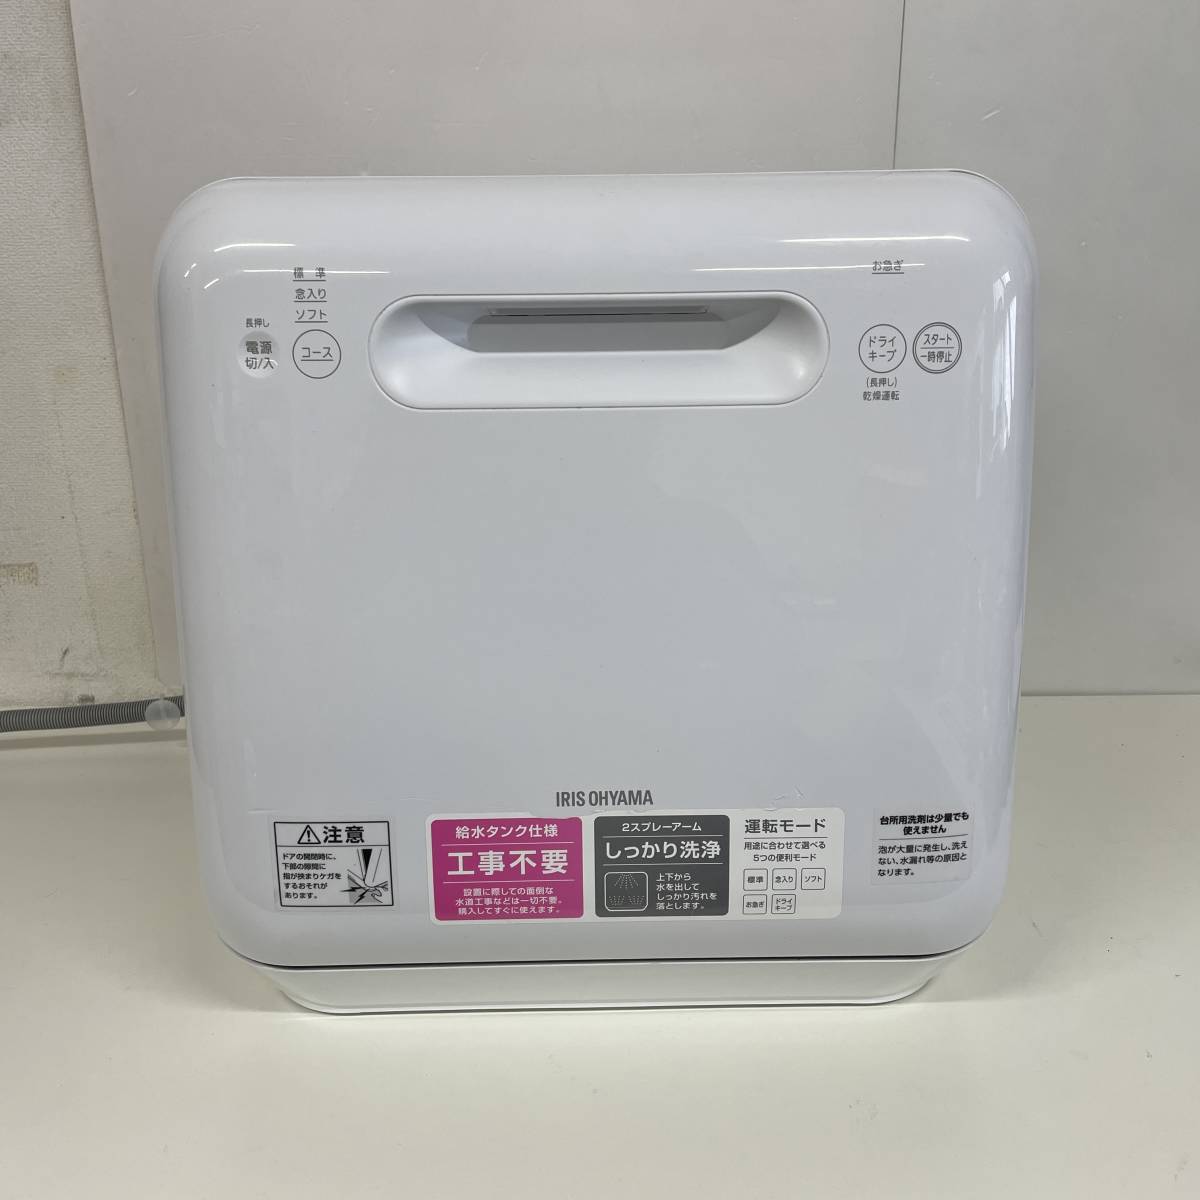 IRIS OHYAMA アイリスオーヤマ ISHT-5000-W 食洗機 通電確認済み 品 